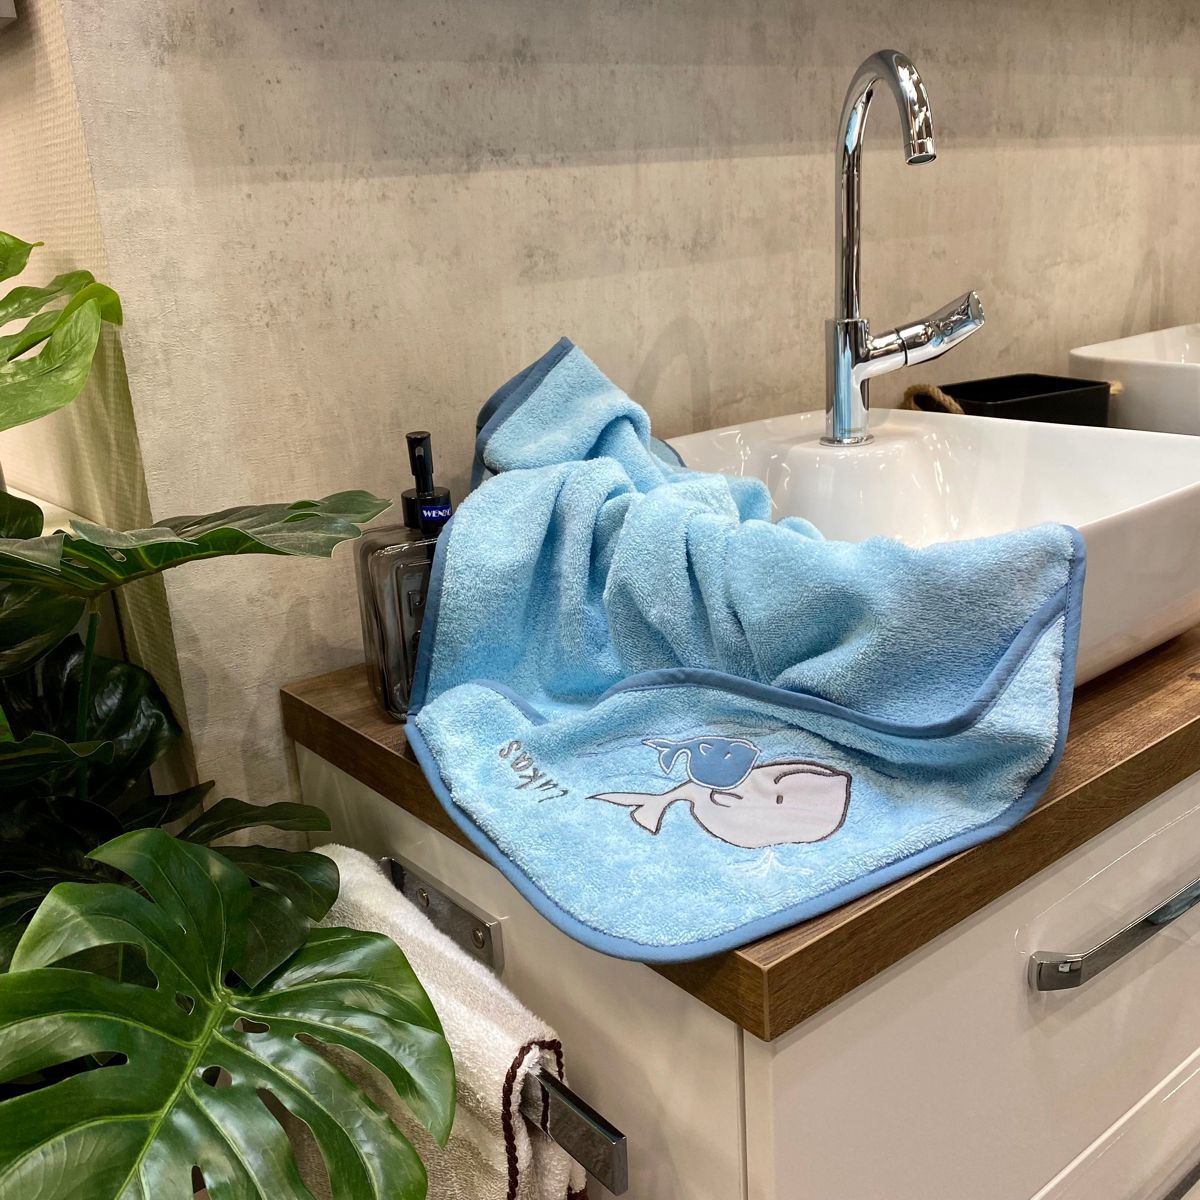 BIO-Handtuch Walfamilie kristall liegt auf Waschbecken